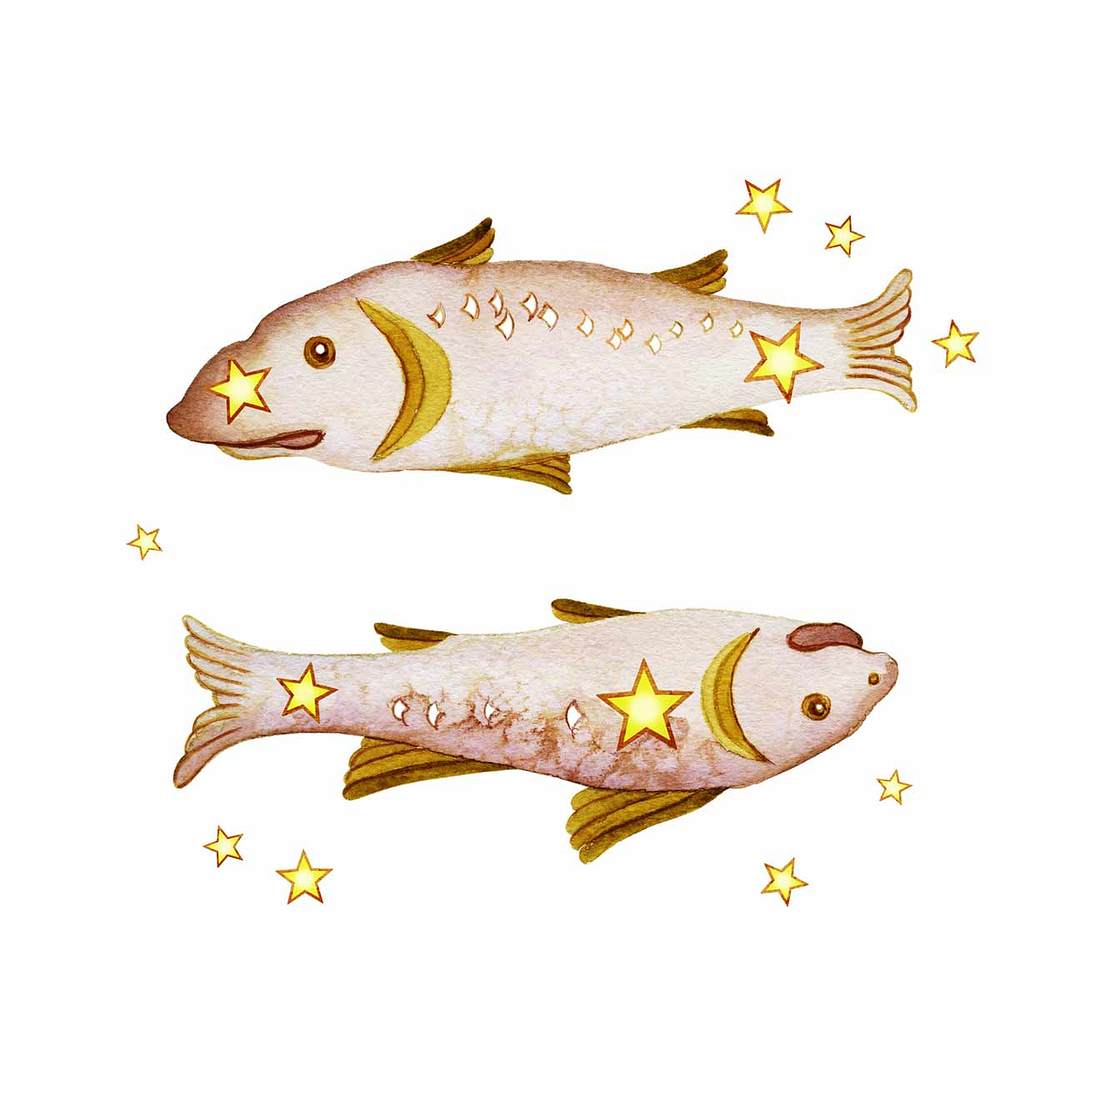 Horoskop: Von diesen Sternzeichen fühlst du dich angezogen Fische